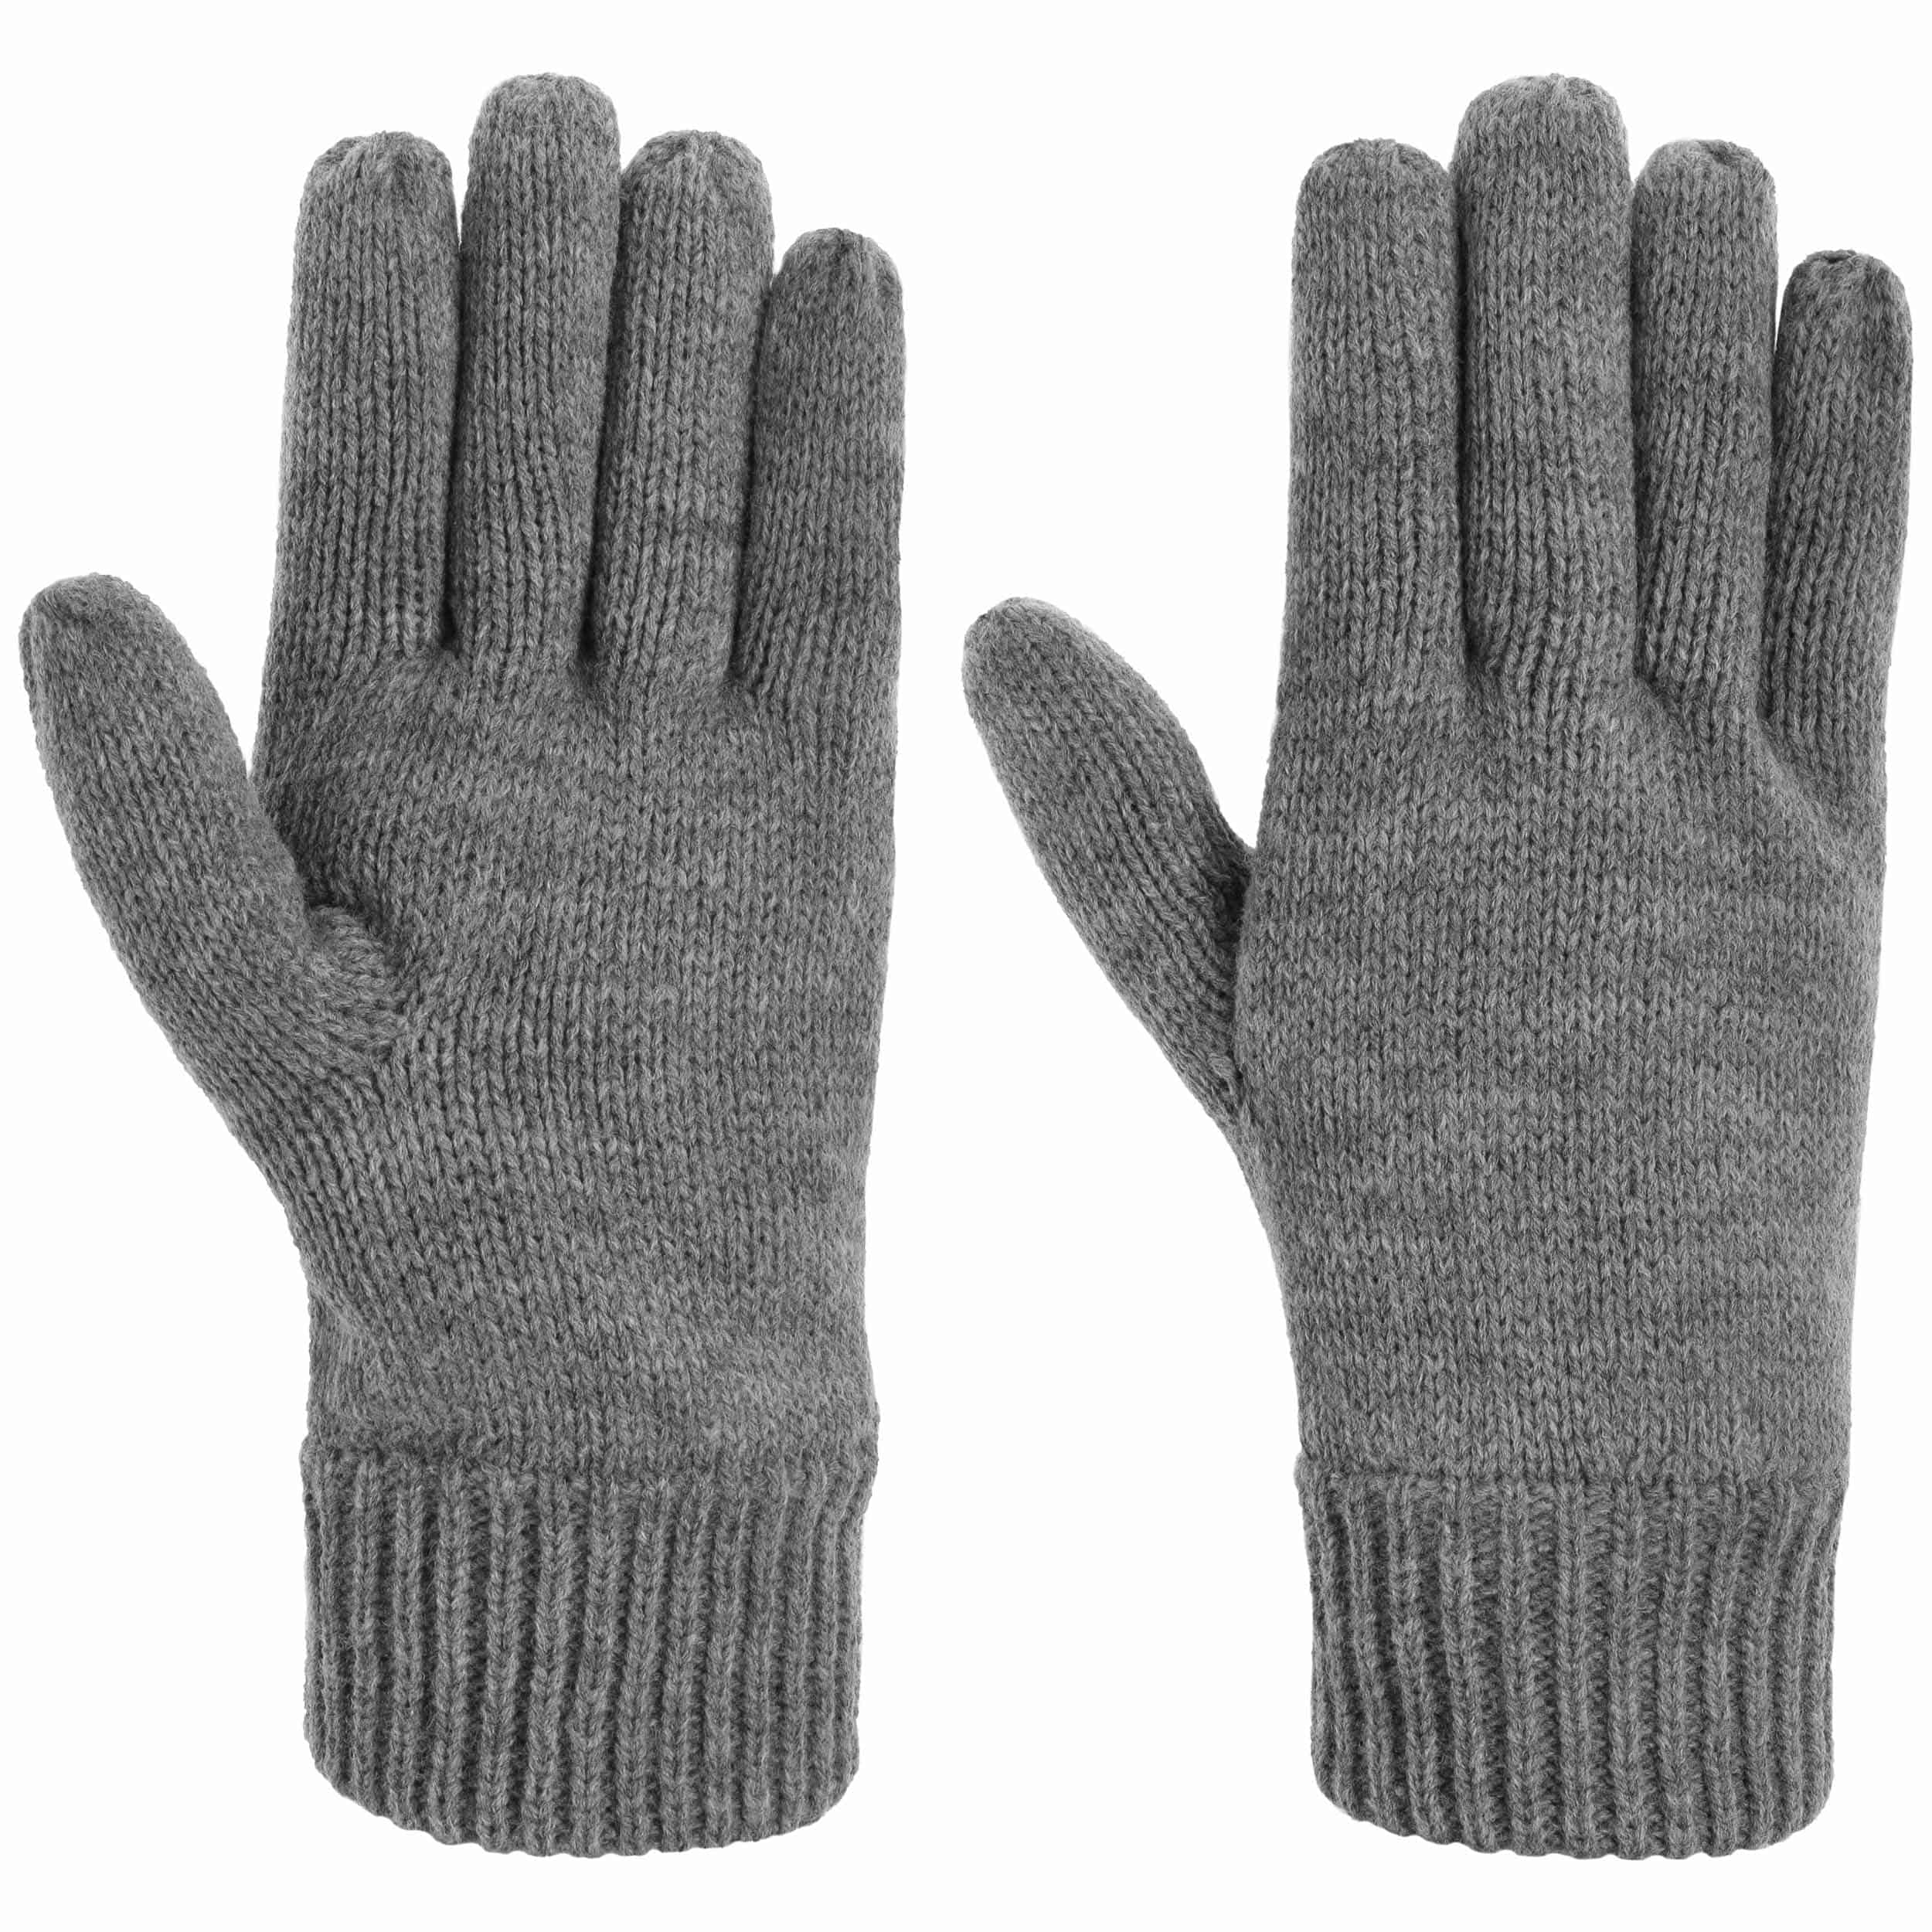 3M Handschoenen by Lipodo 17,95 €